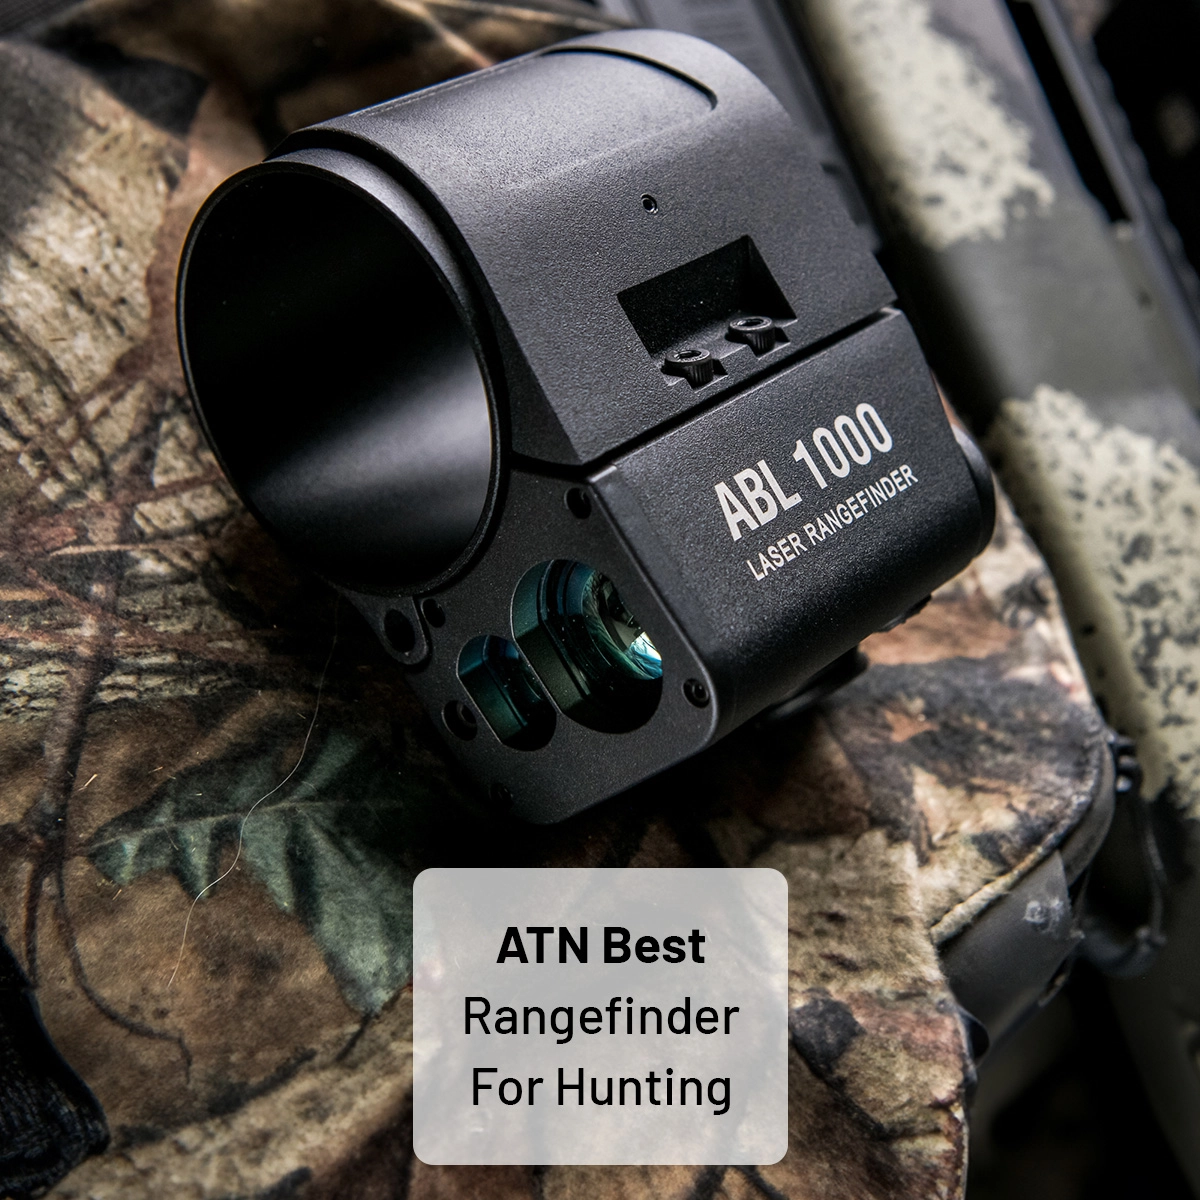 Best rangefinder for hunting